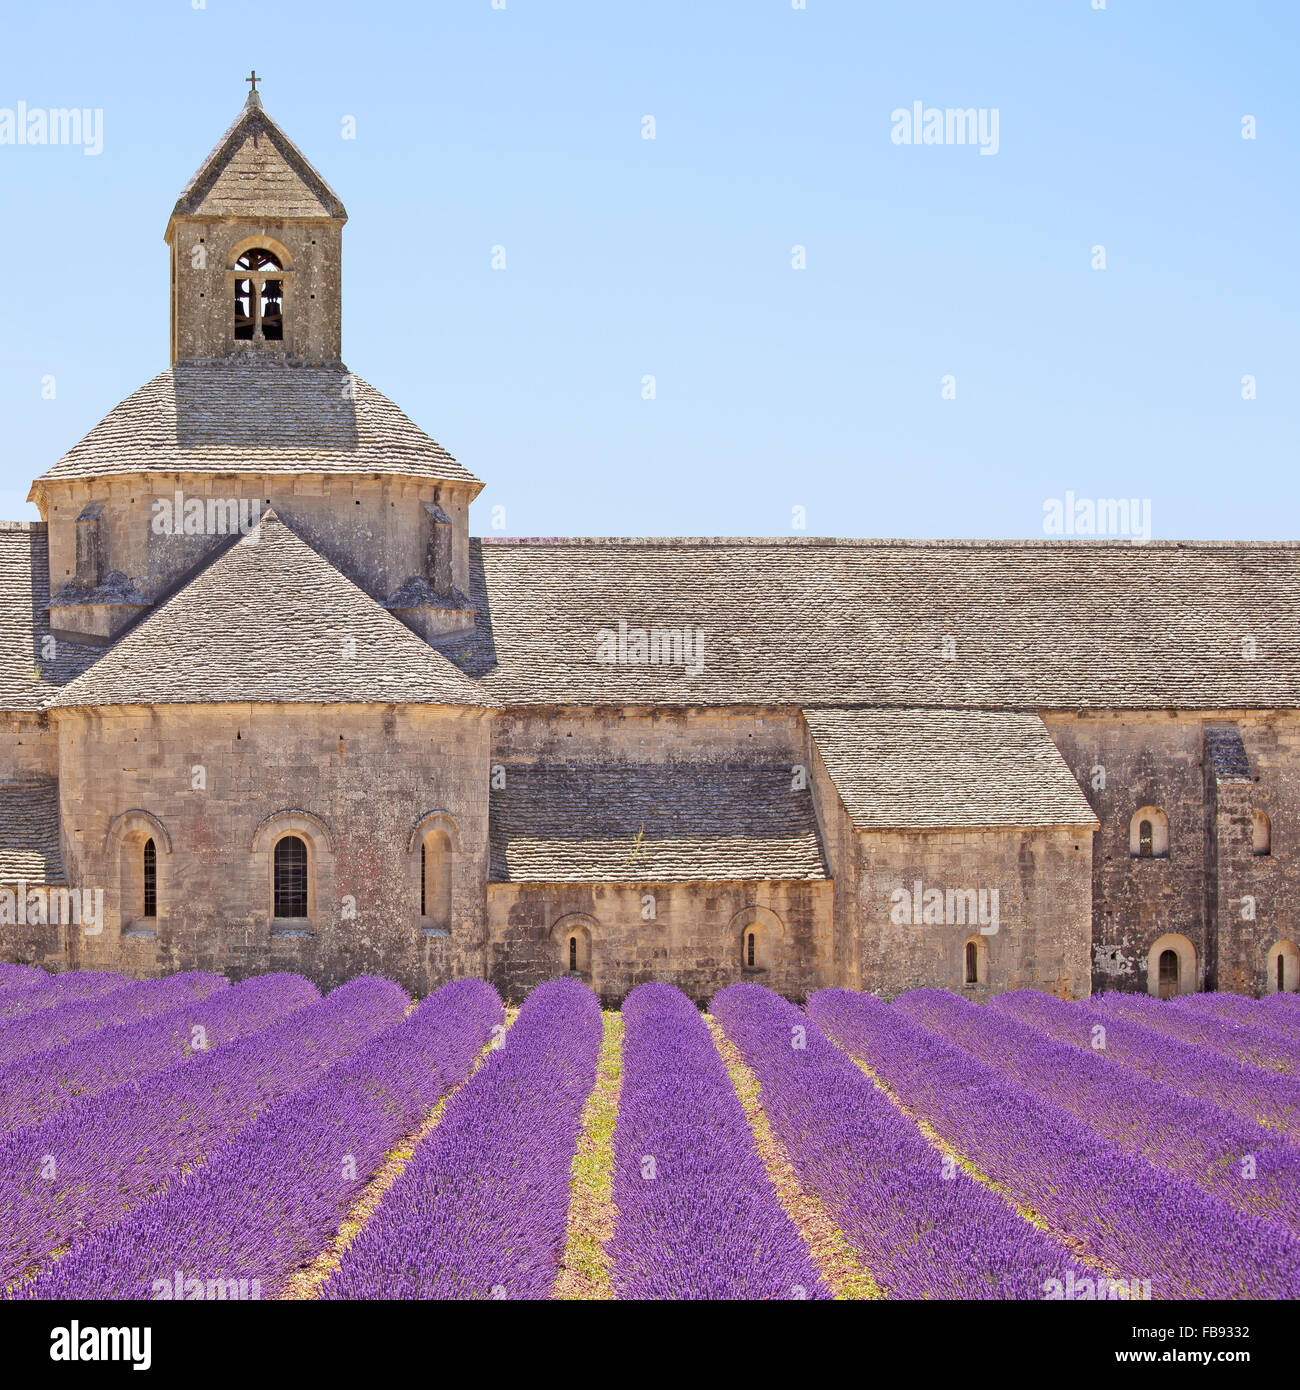 Abtei von Senanque und blühenden Zeilen Lavendel Blumen, Detail. Gordes, Luberon, Vaucluse, Provence, Frankreich, Europa. Stockfoto